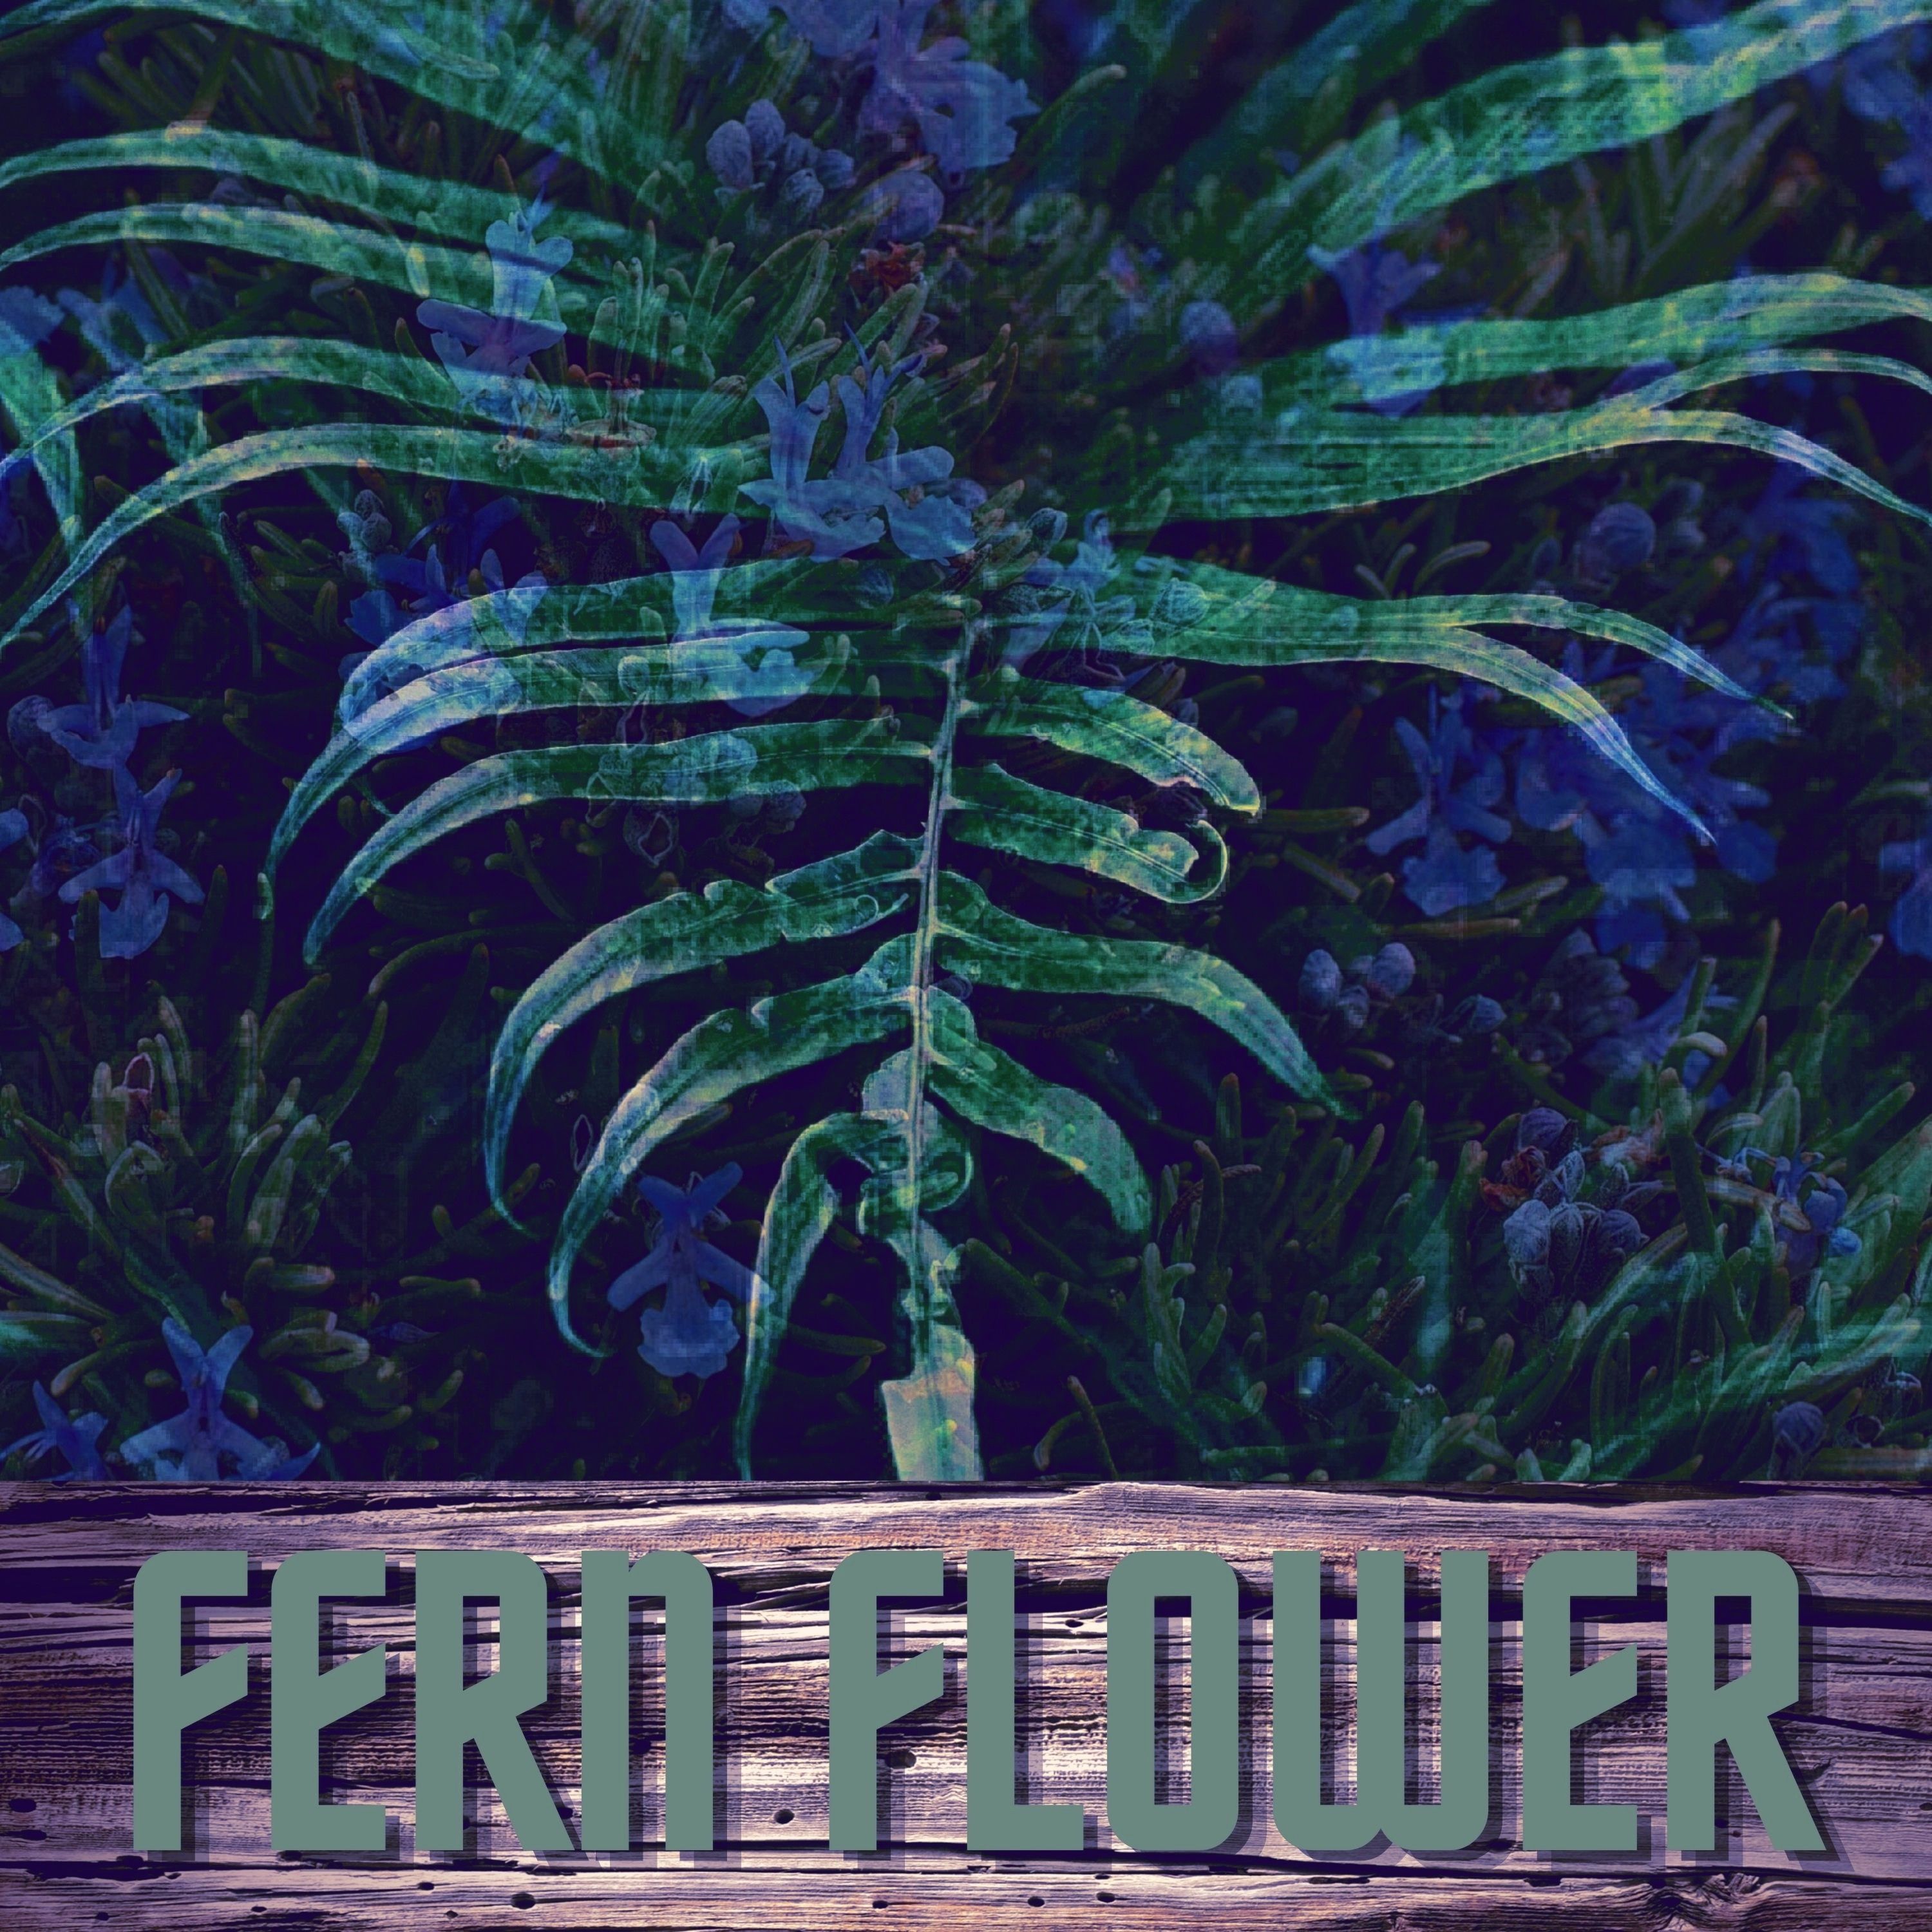 Fern Flower